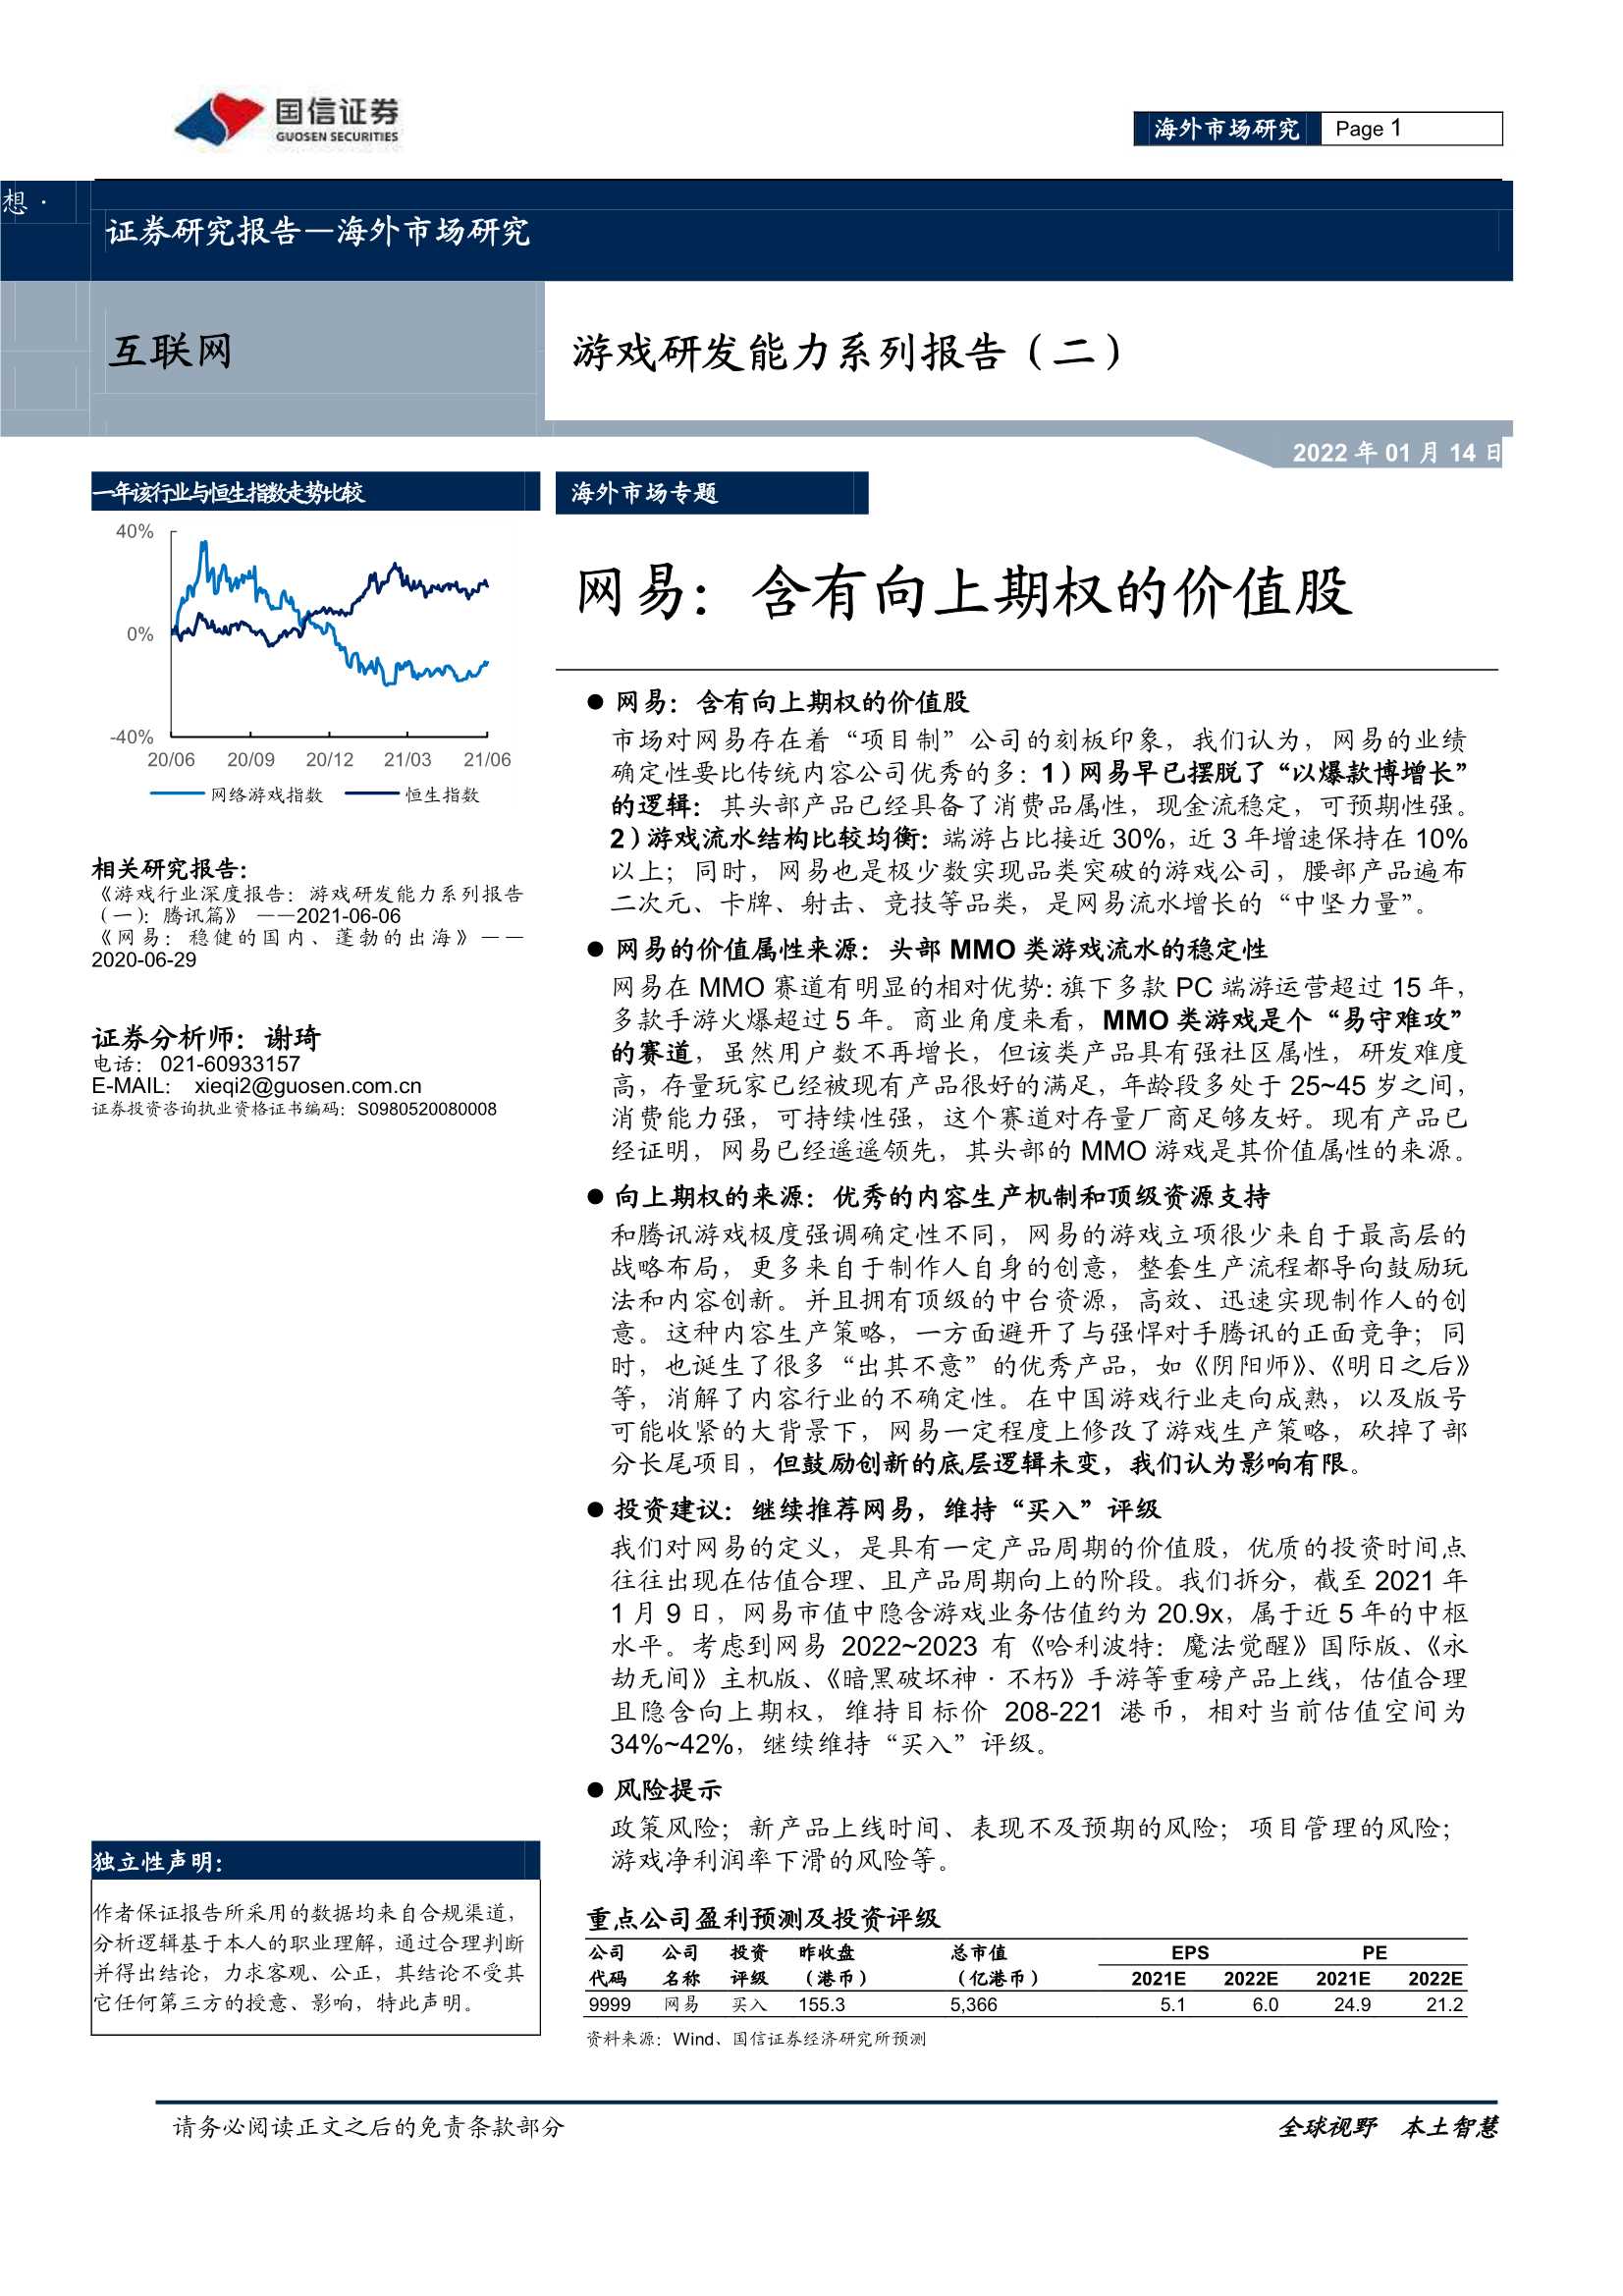 国信证券-互联网行业游戏研发能力系列报告（二）：网易，含有向上期权的价值股-20220114-31页